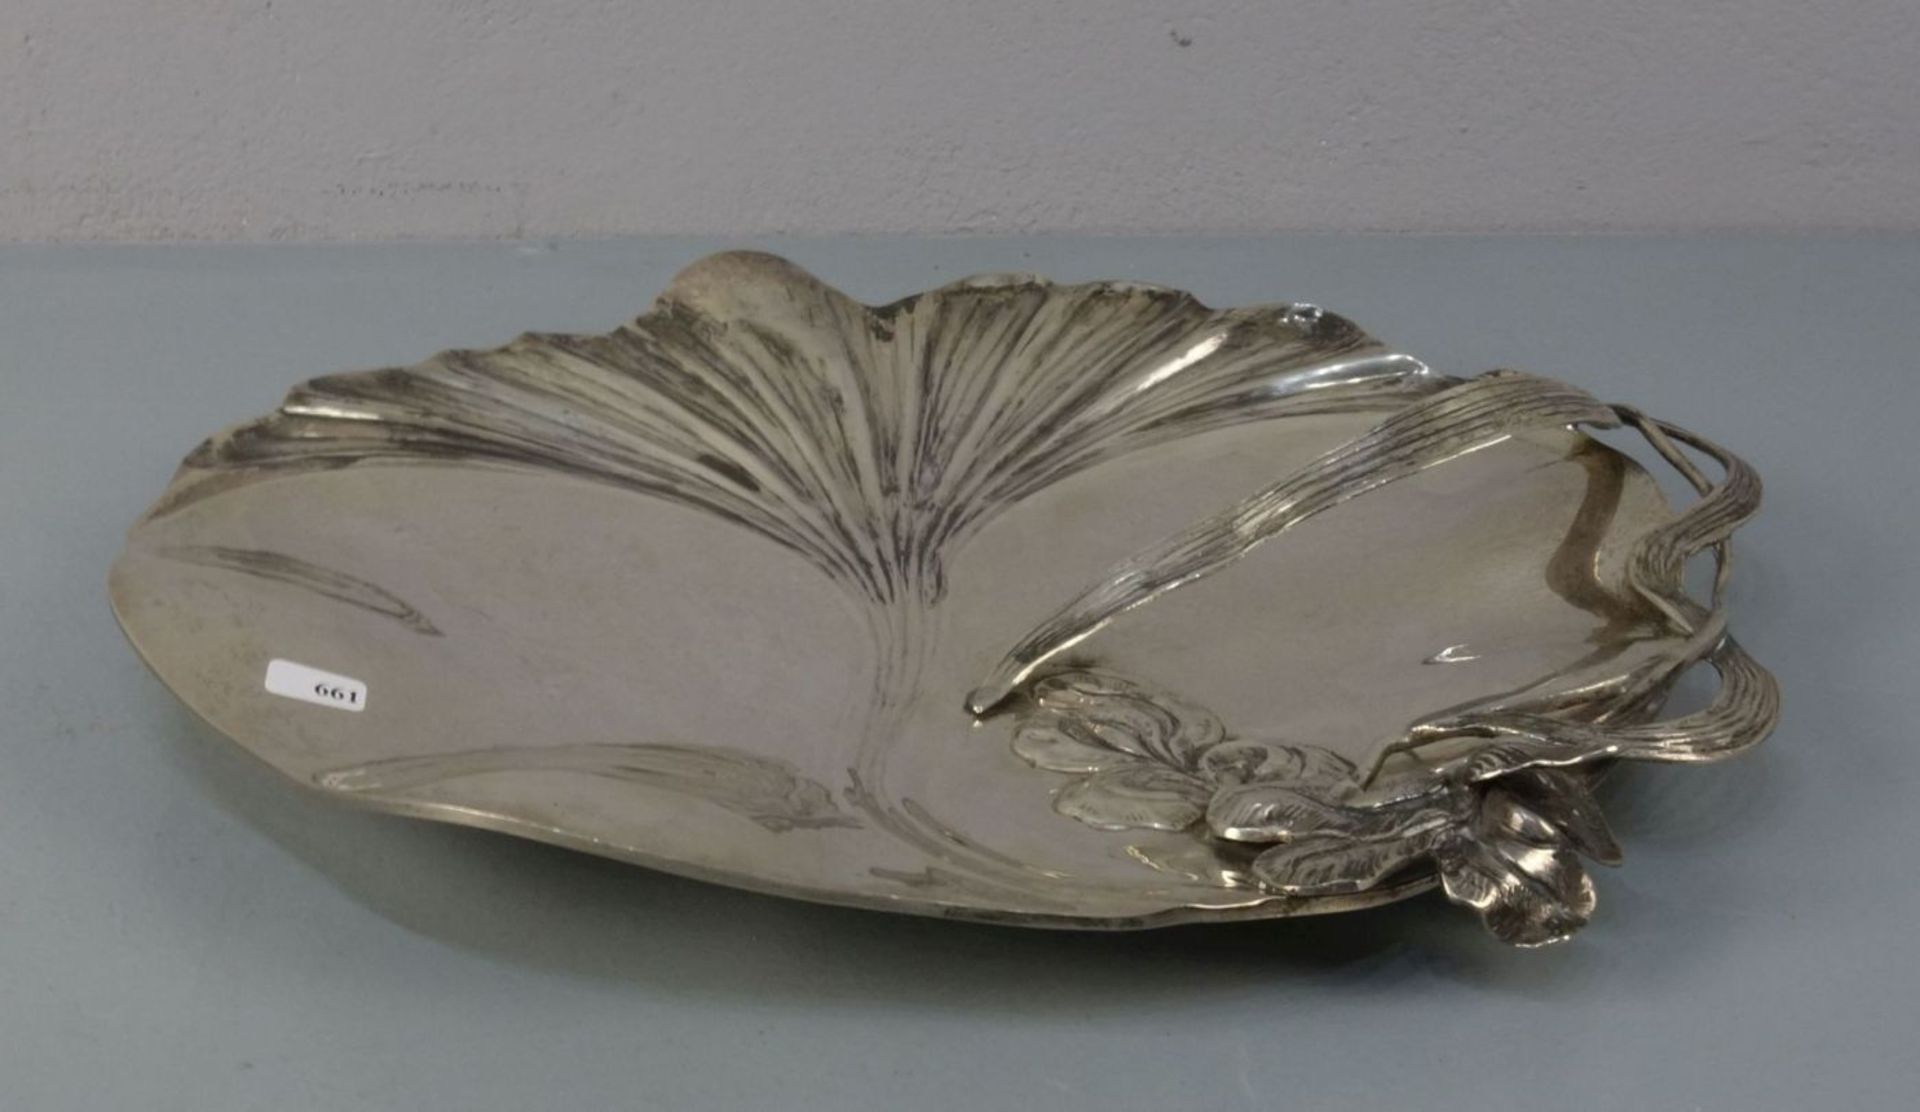 SILBERNE SCHALE MIT FLORALDEKOR im Stil des Jugendstils / silver bowl with gingko and flag lily - Image 2 of 3